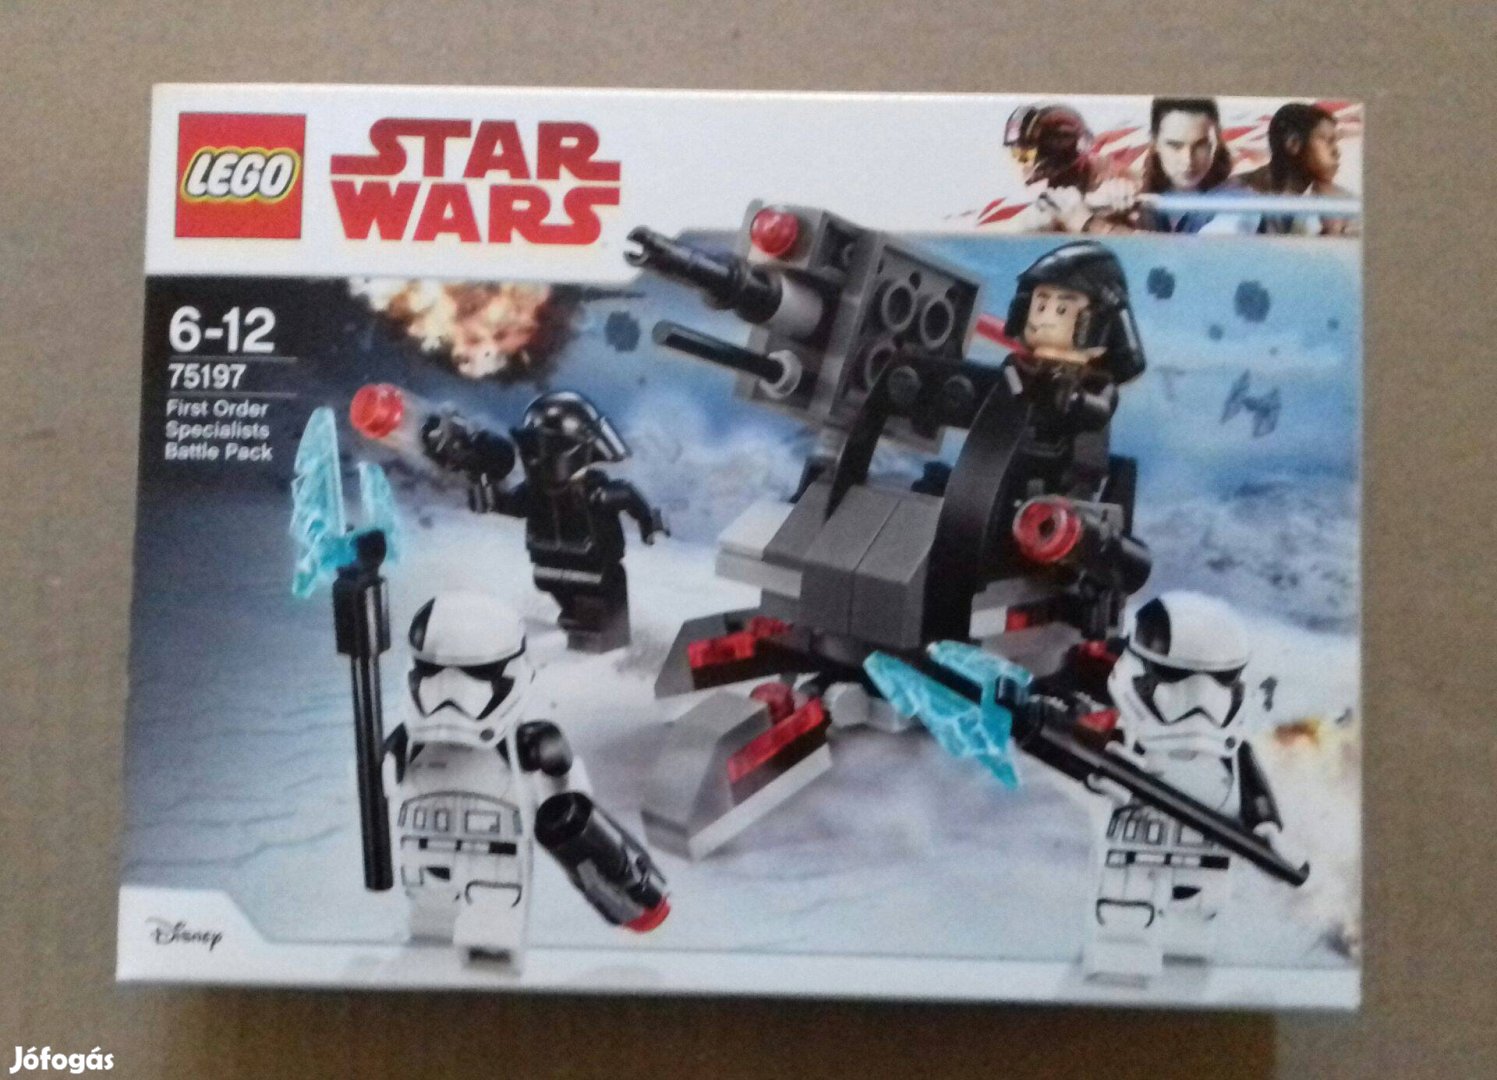 2018: Bontatlan Star Wars LEGO 75197 Első rendi specialisták utánvét G